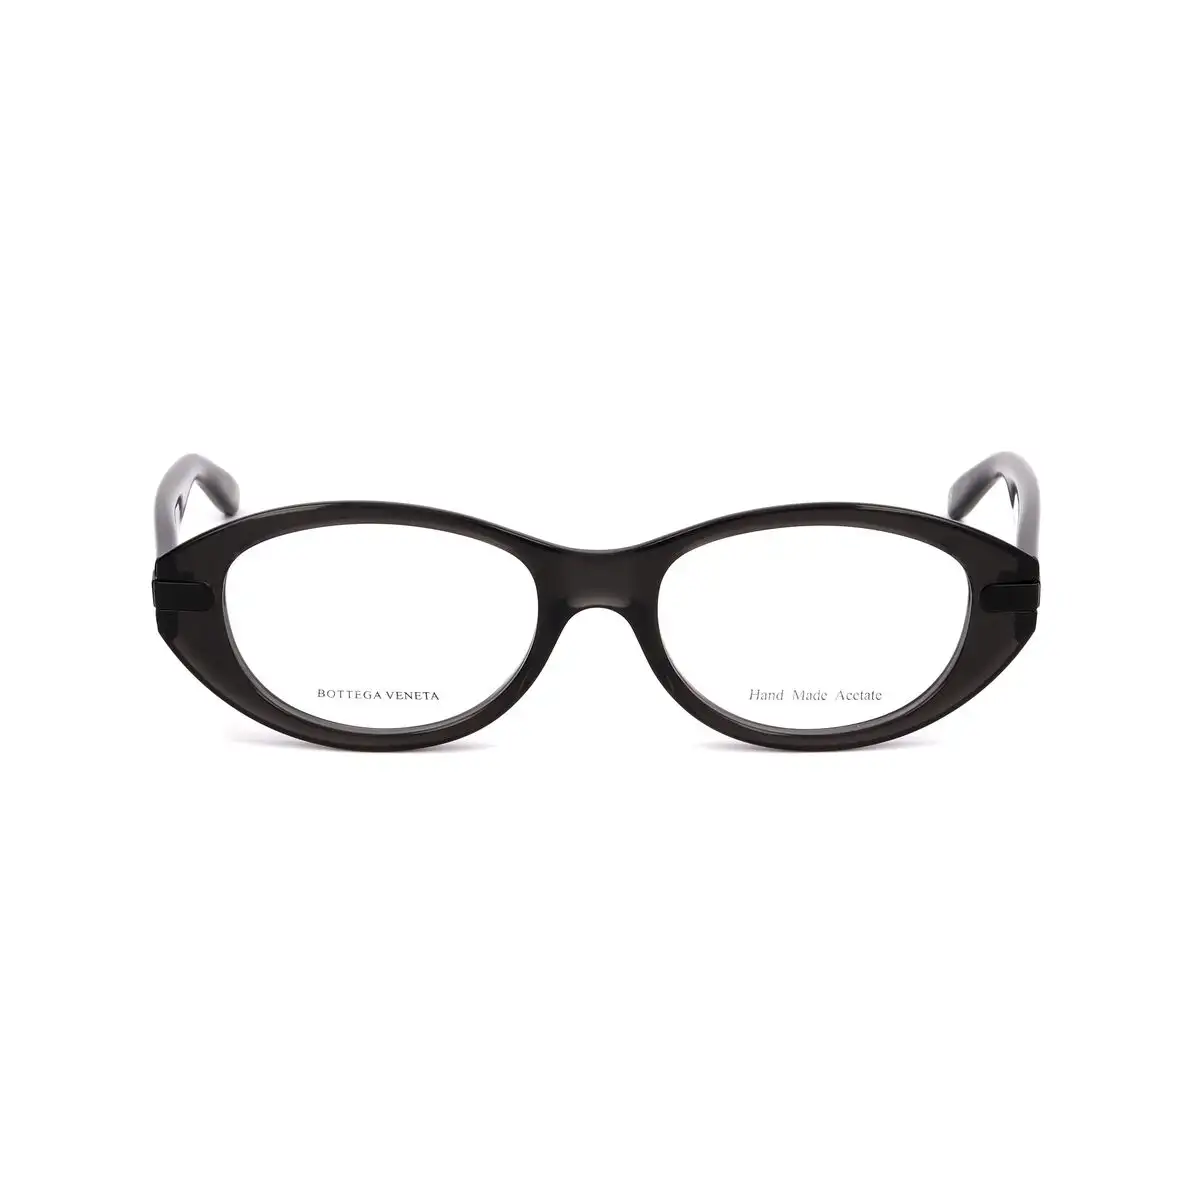 Monture de lunettes femme bottega veneta bv 235 4py_8498. DIAYTAR SENEGAL - Votre Destination Shopping d'Exception. Parcourez nos rayons virtuels et choisissez des produits qui incarnent l'excellence et la diversité.